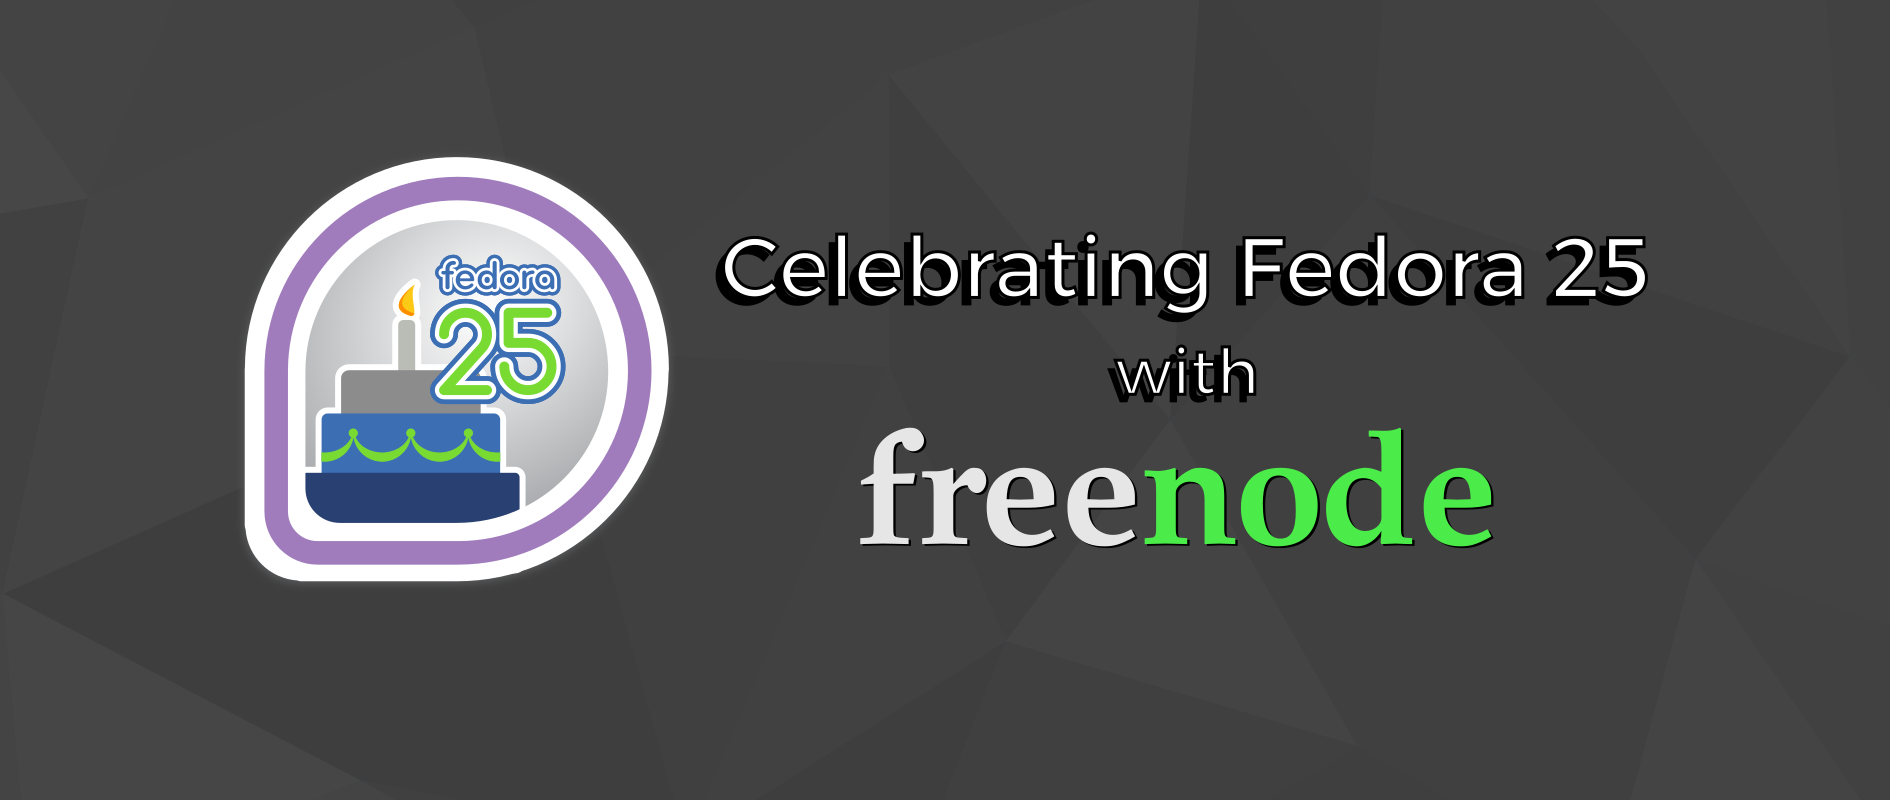 Celebrating Fedora 25 with freenode